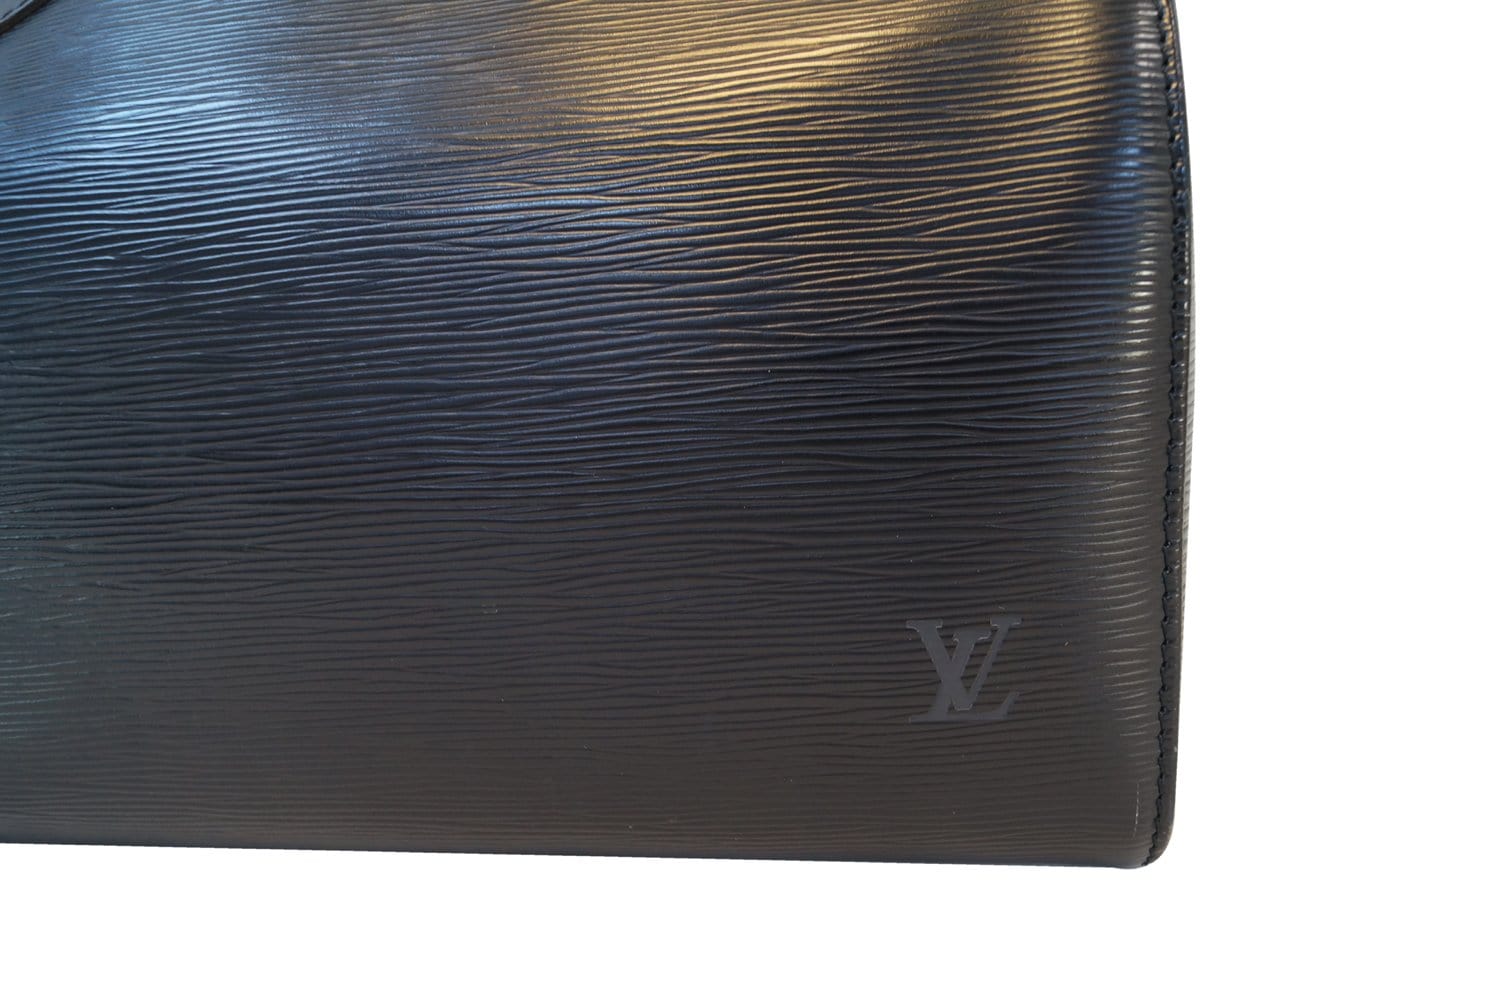 Authentic LOUIS VUITTON Epi Leather Black Speedy 35 Satchel Bag TT1435